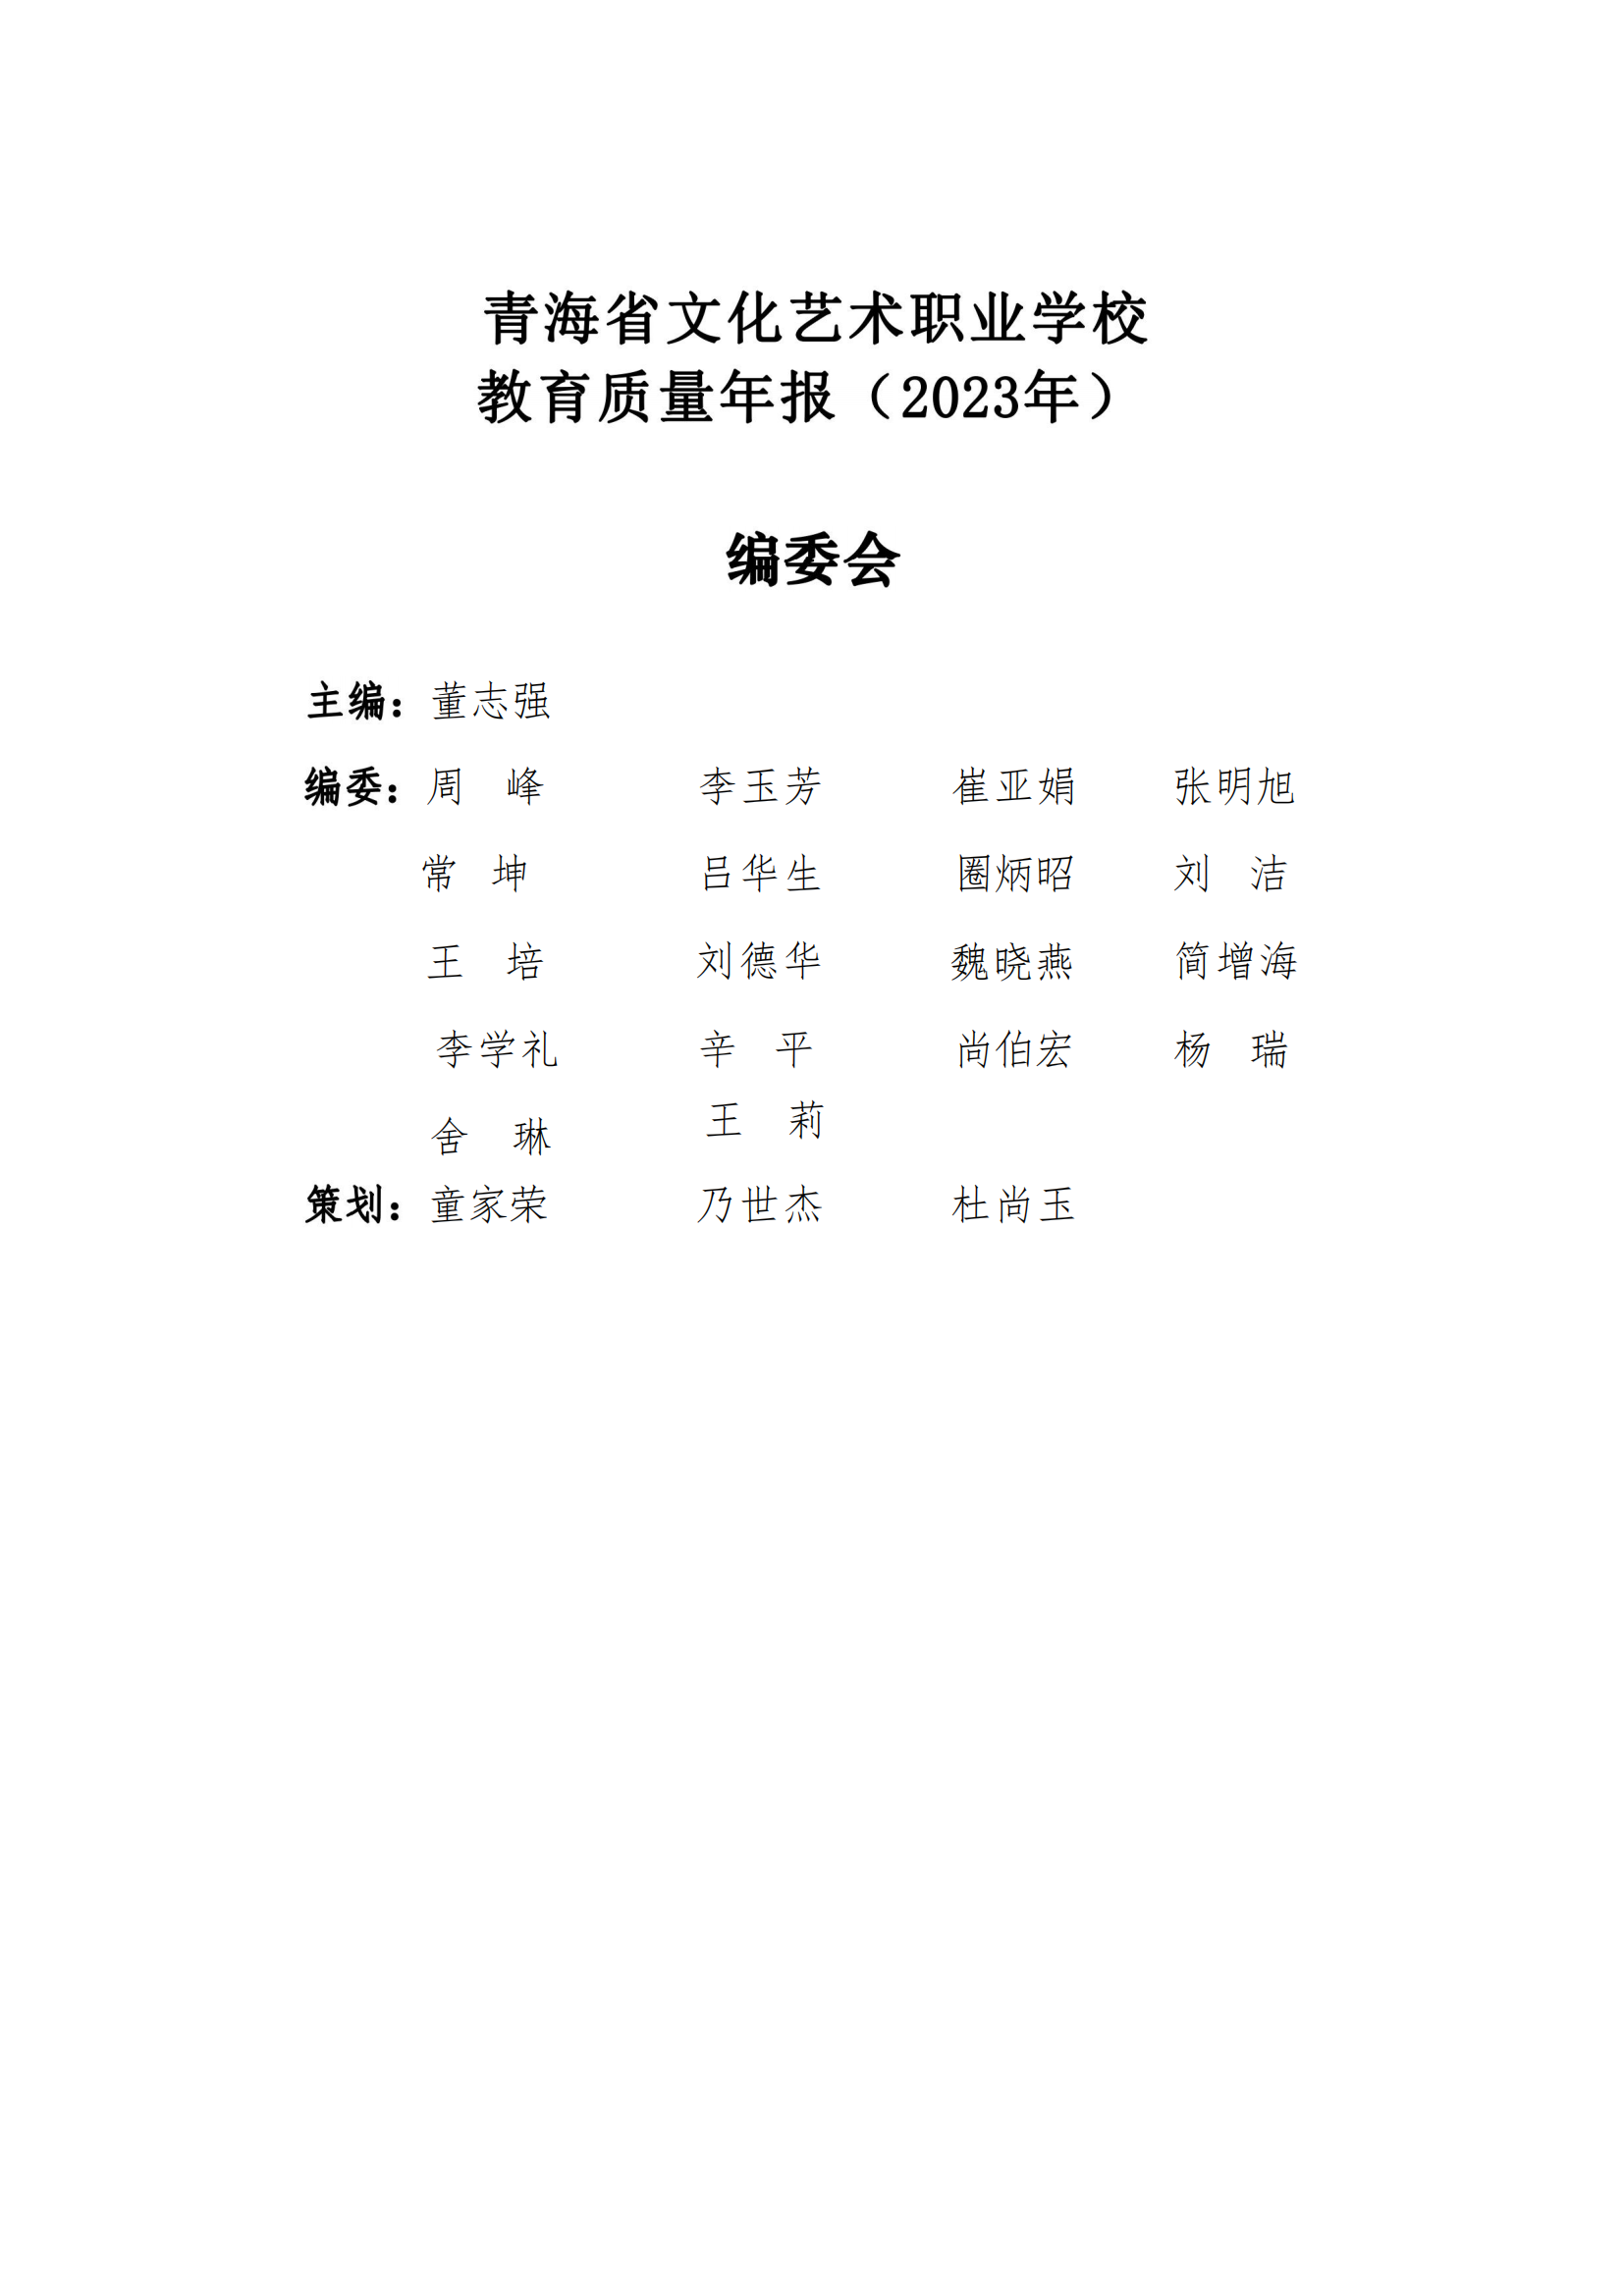 青海省文化艺术职业学校教育质量年报_03.png